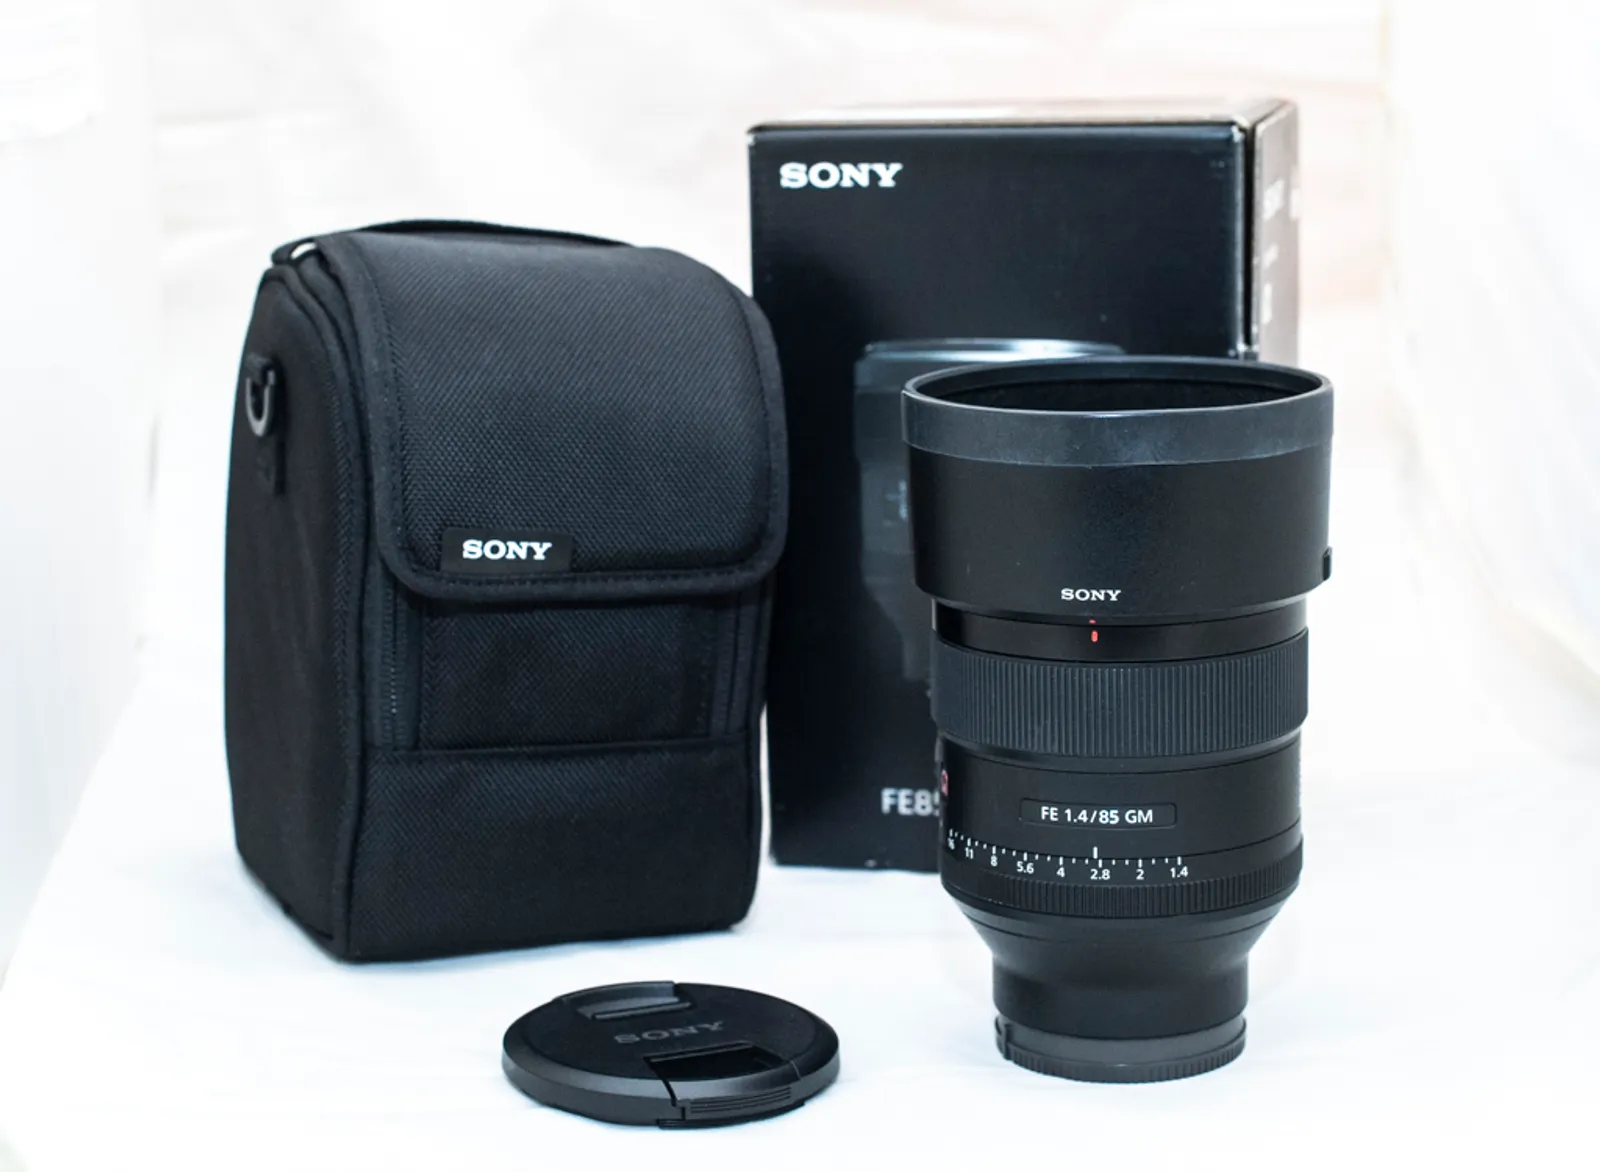 Sony FE 85mm F1.4 GM lens